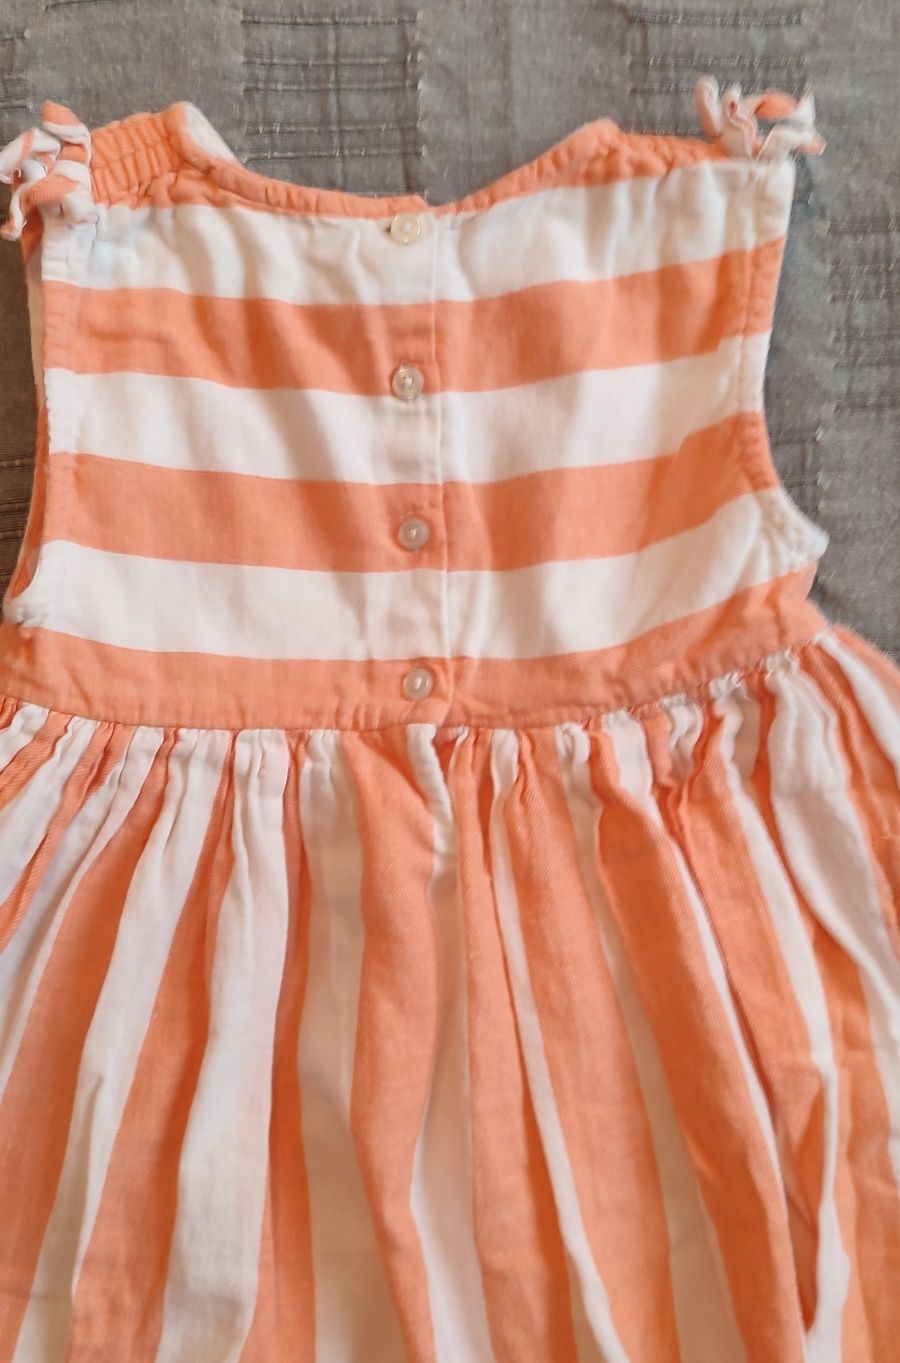 Платтячко,сукня для дівчинки,3-4 роки.